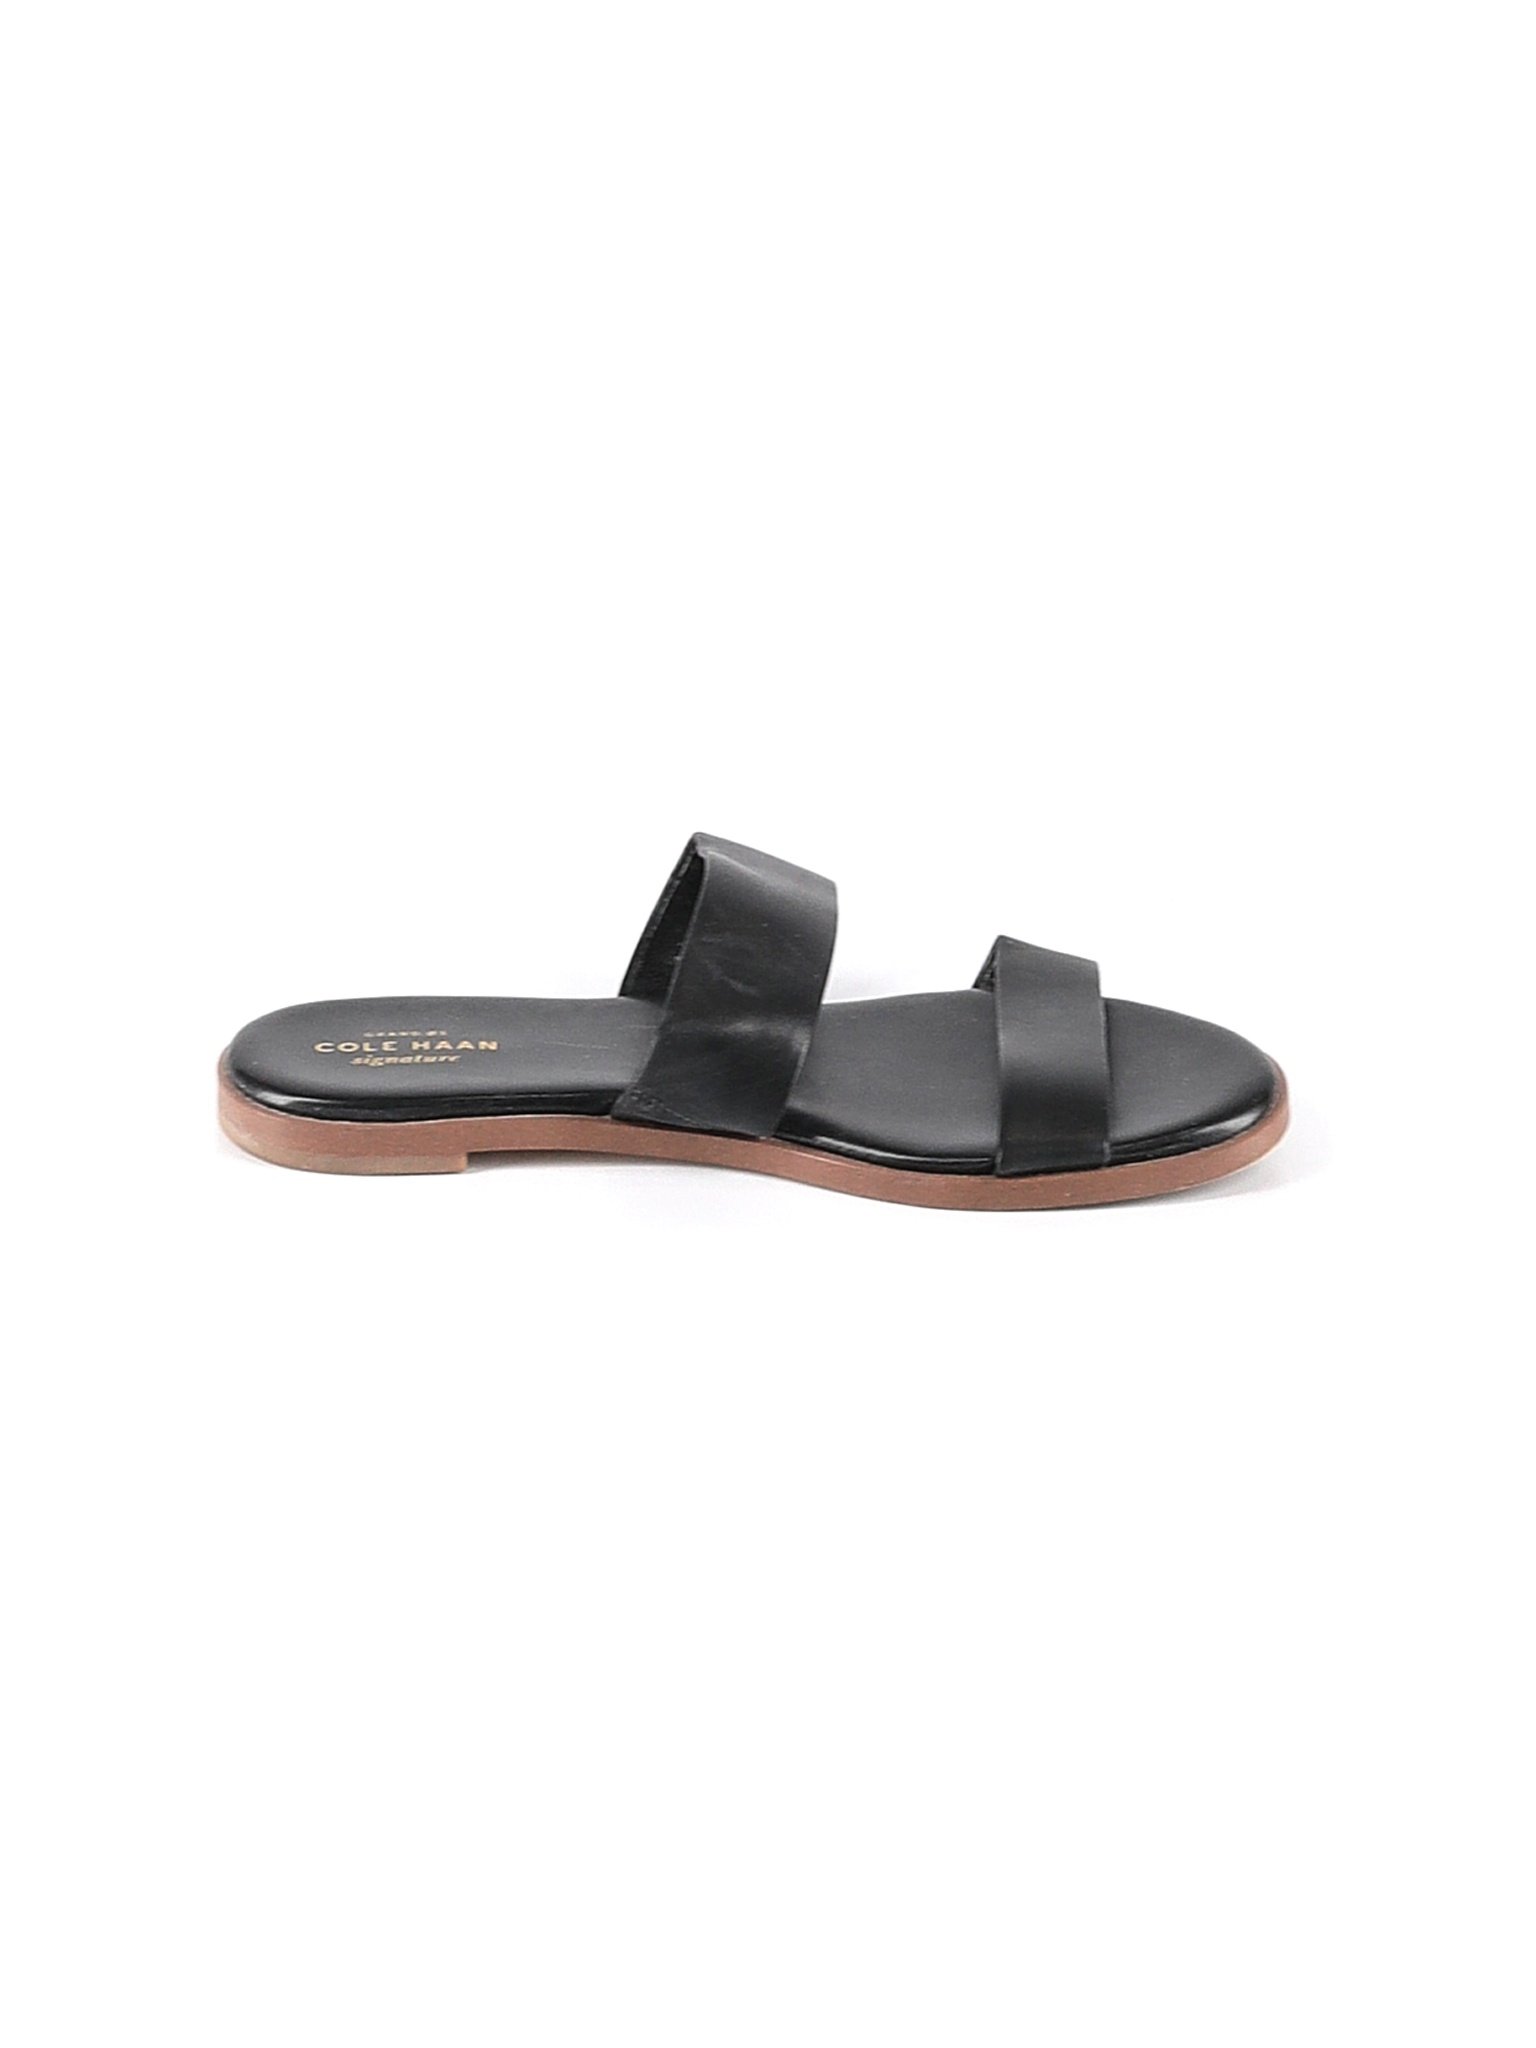 Cole Haan Women Brown Sandals US 7 | eBay